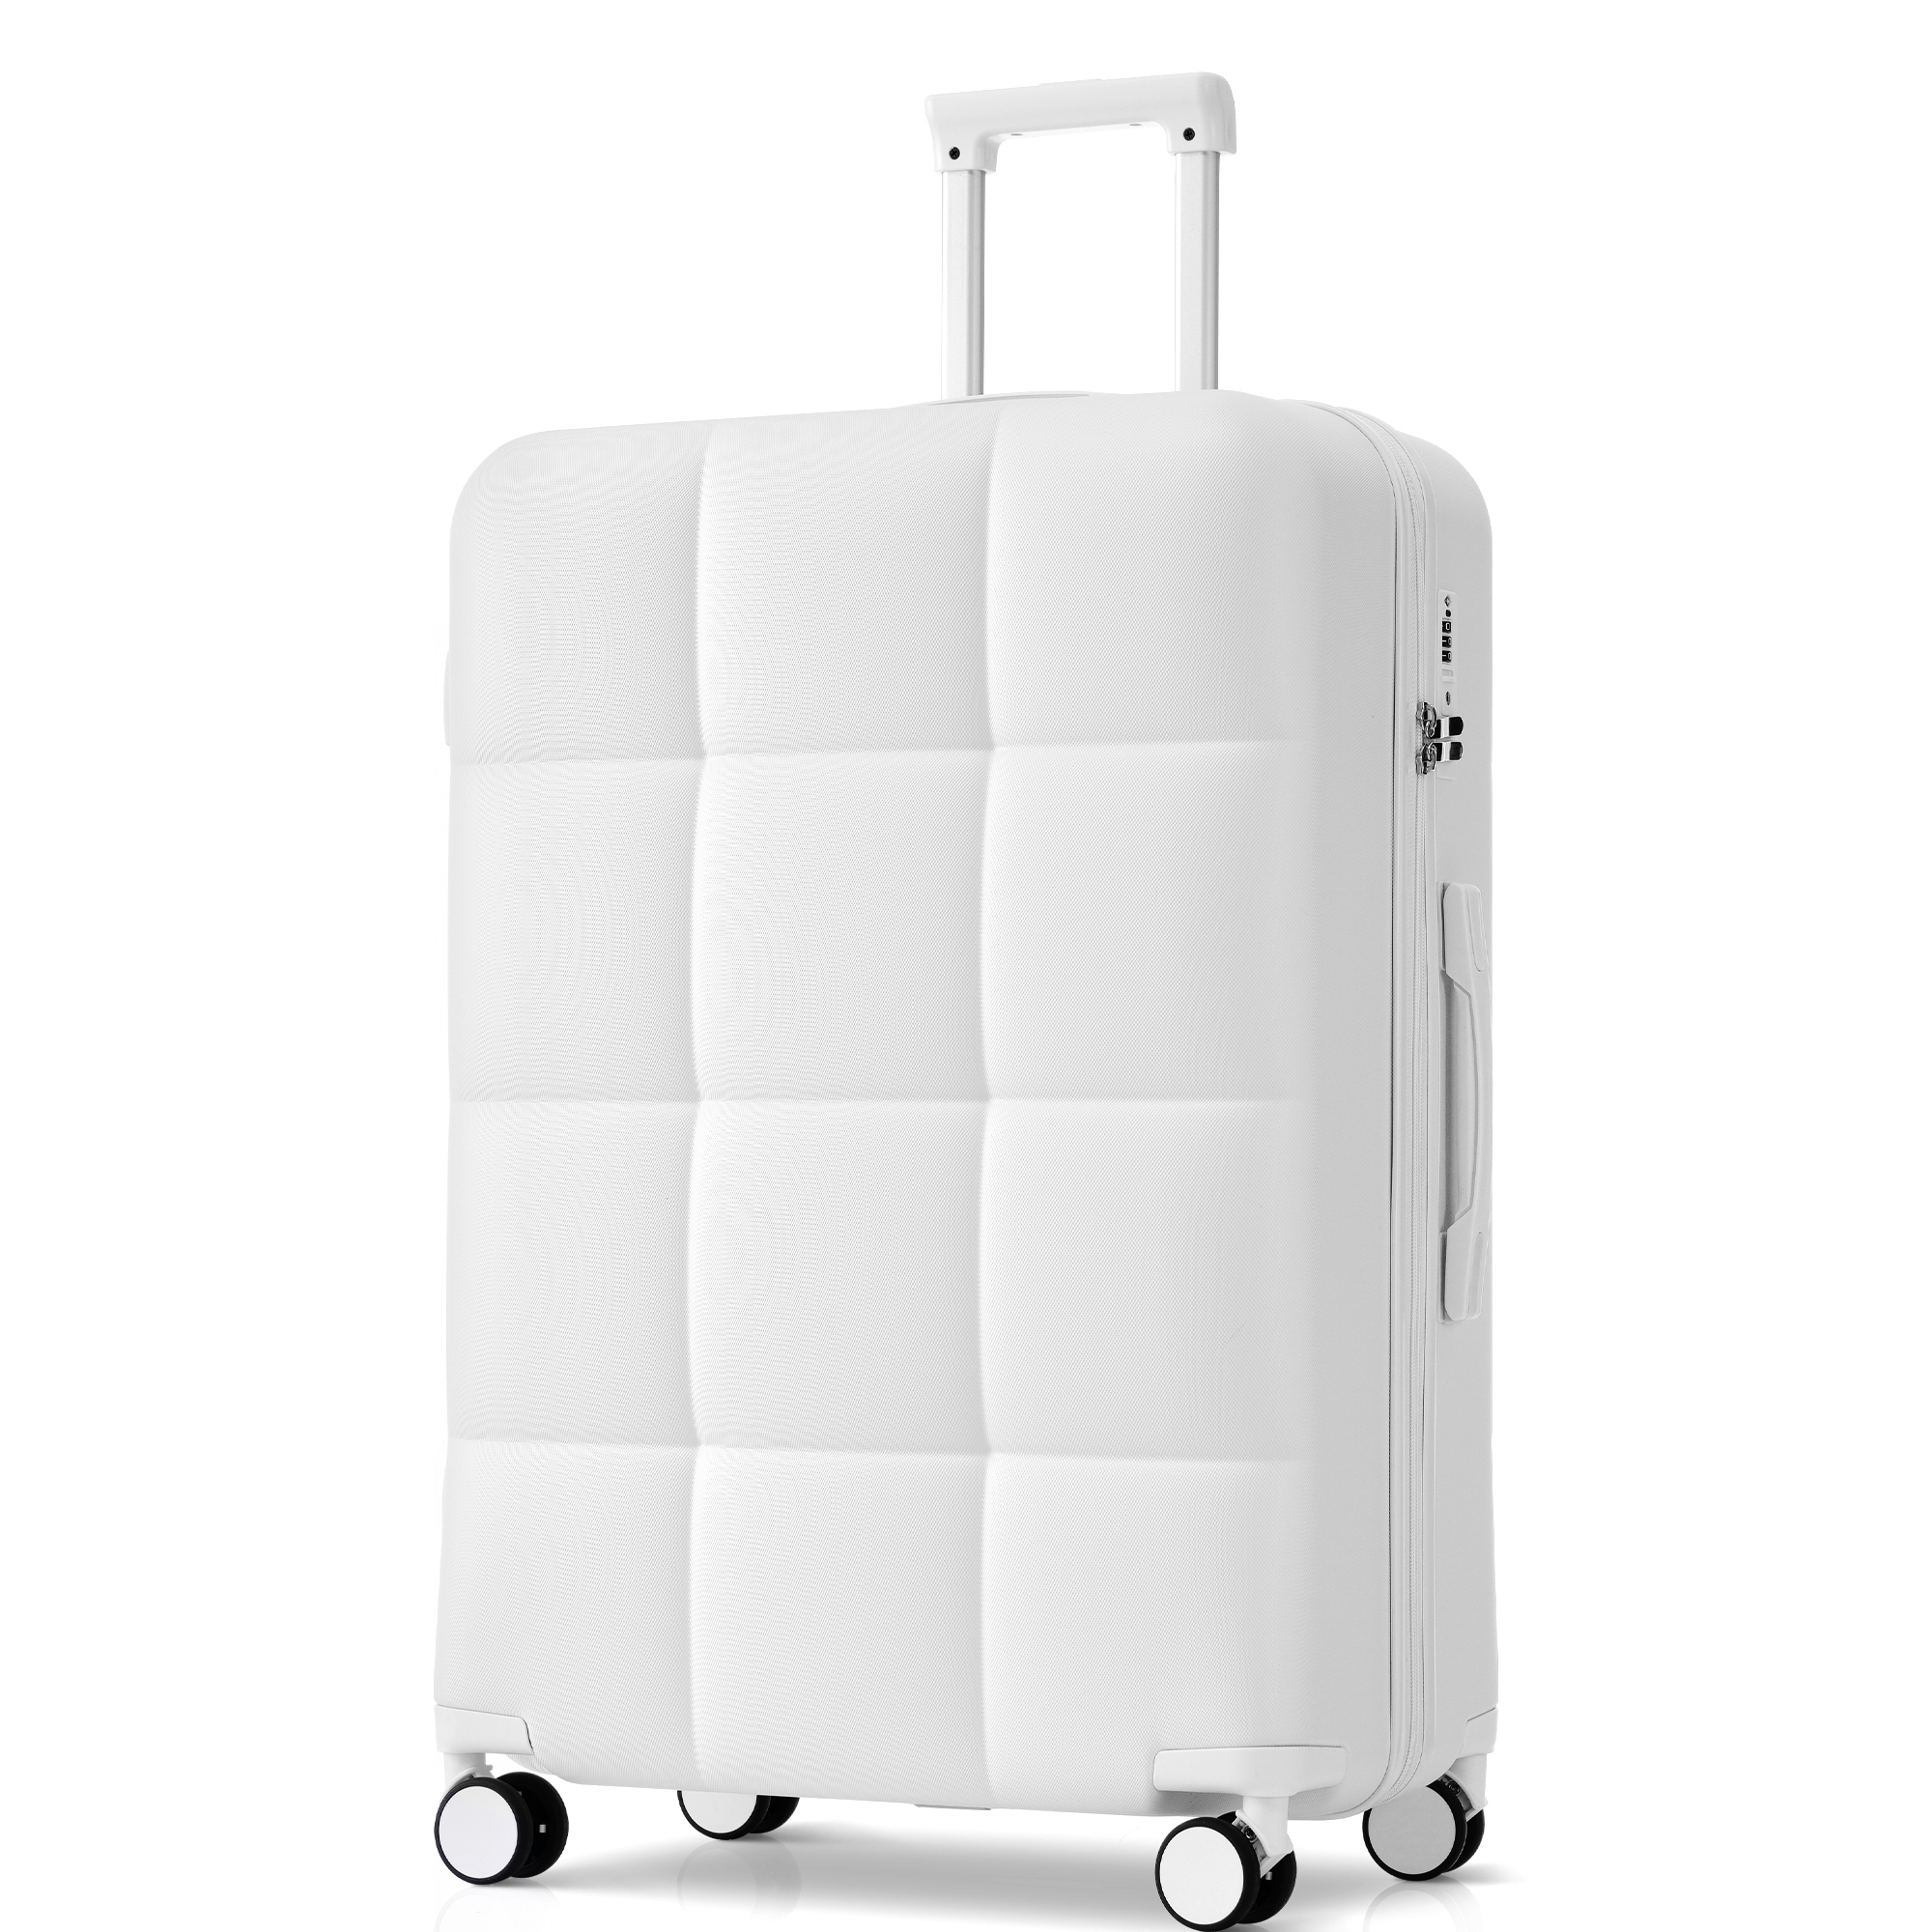 スーツケース キャリーバッグ キャリーケース Lサイズ 大型 超軽量 ファスナー式 TSAロック搭載 フック機能付き 360度回転 旅行 おしゃれ 軽い